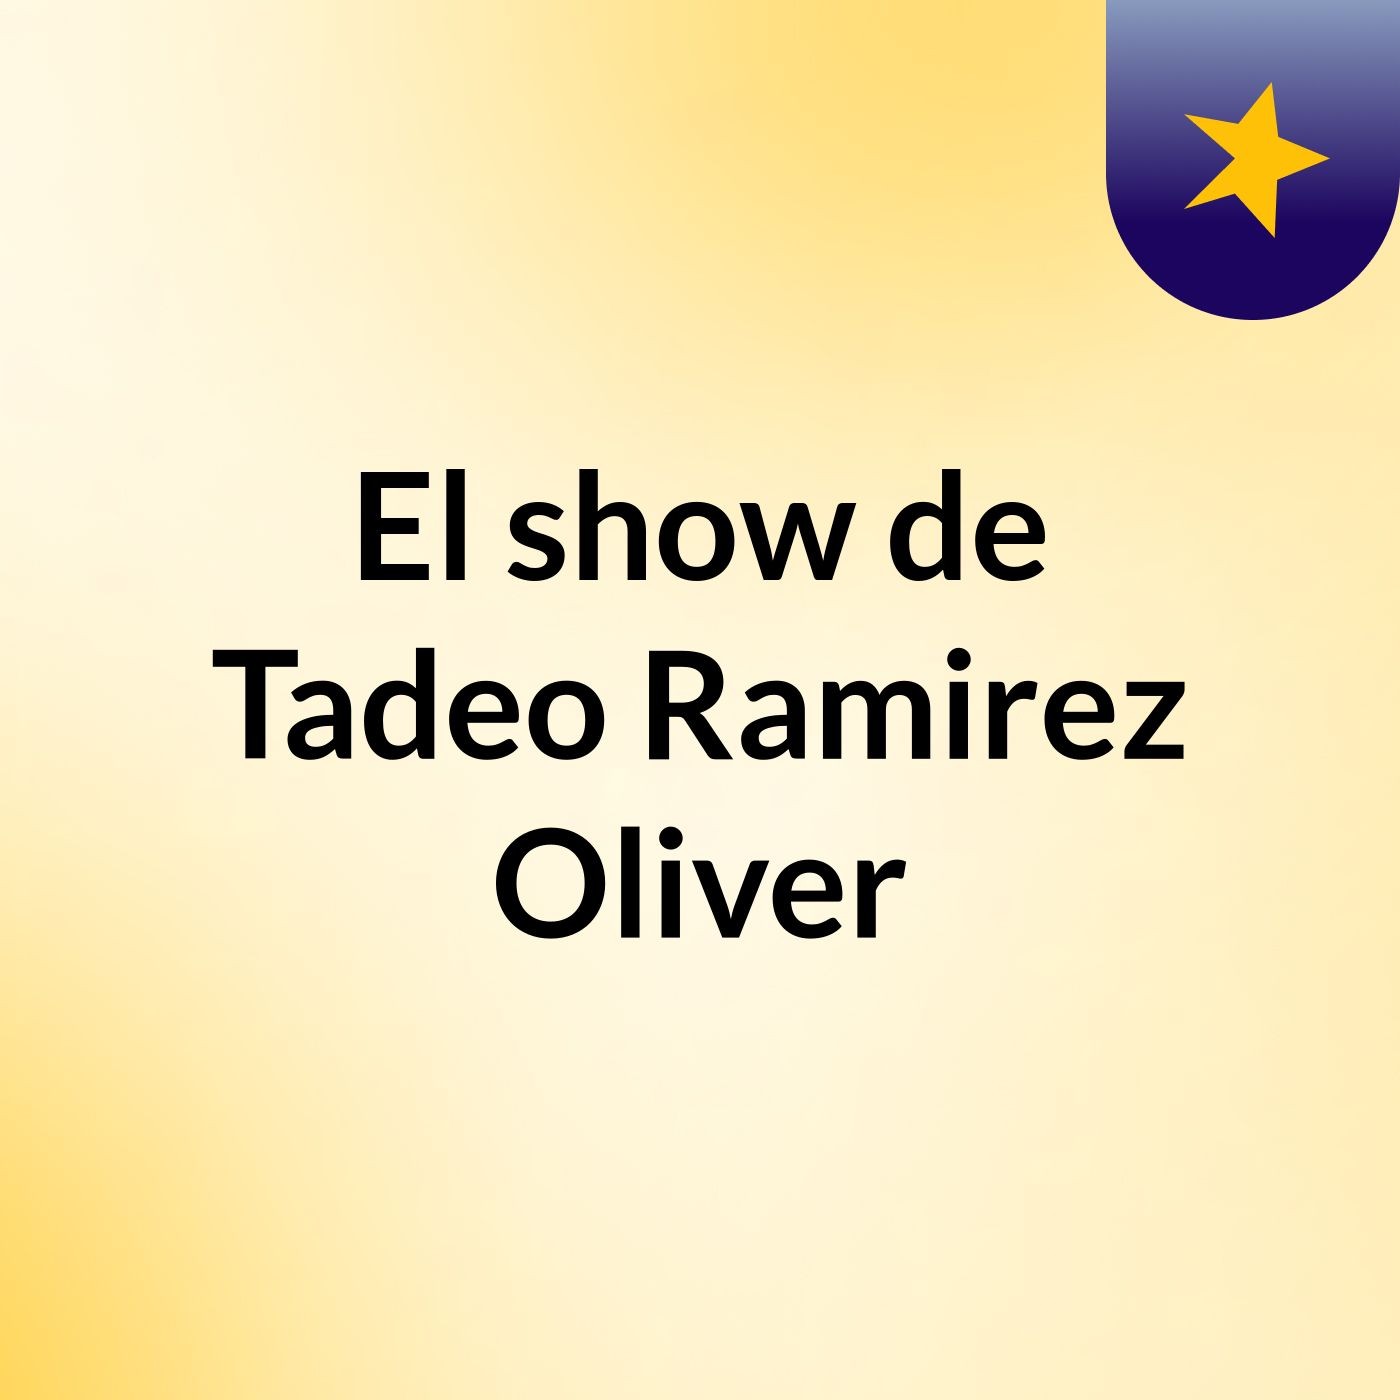 El show de Tadeo Ramirez Oliver